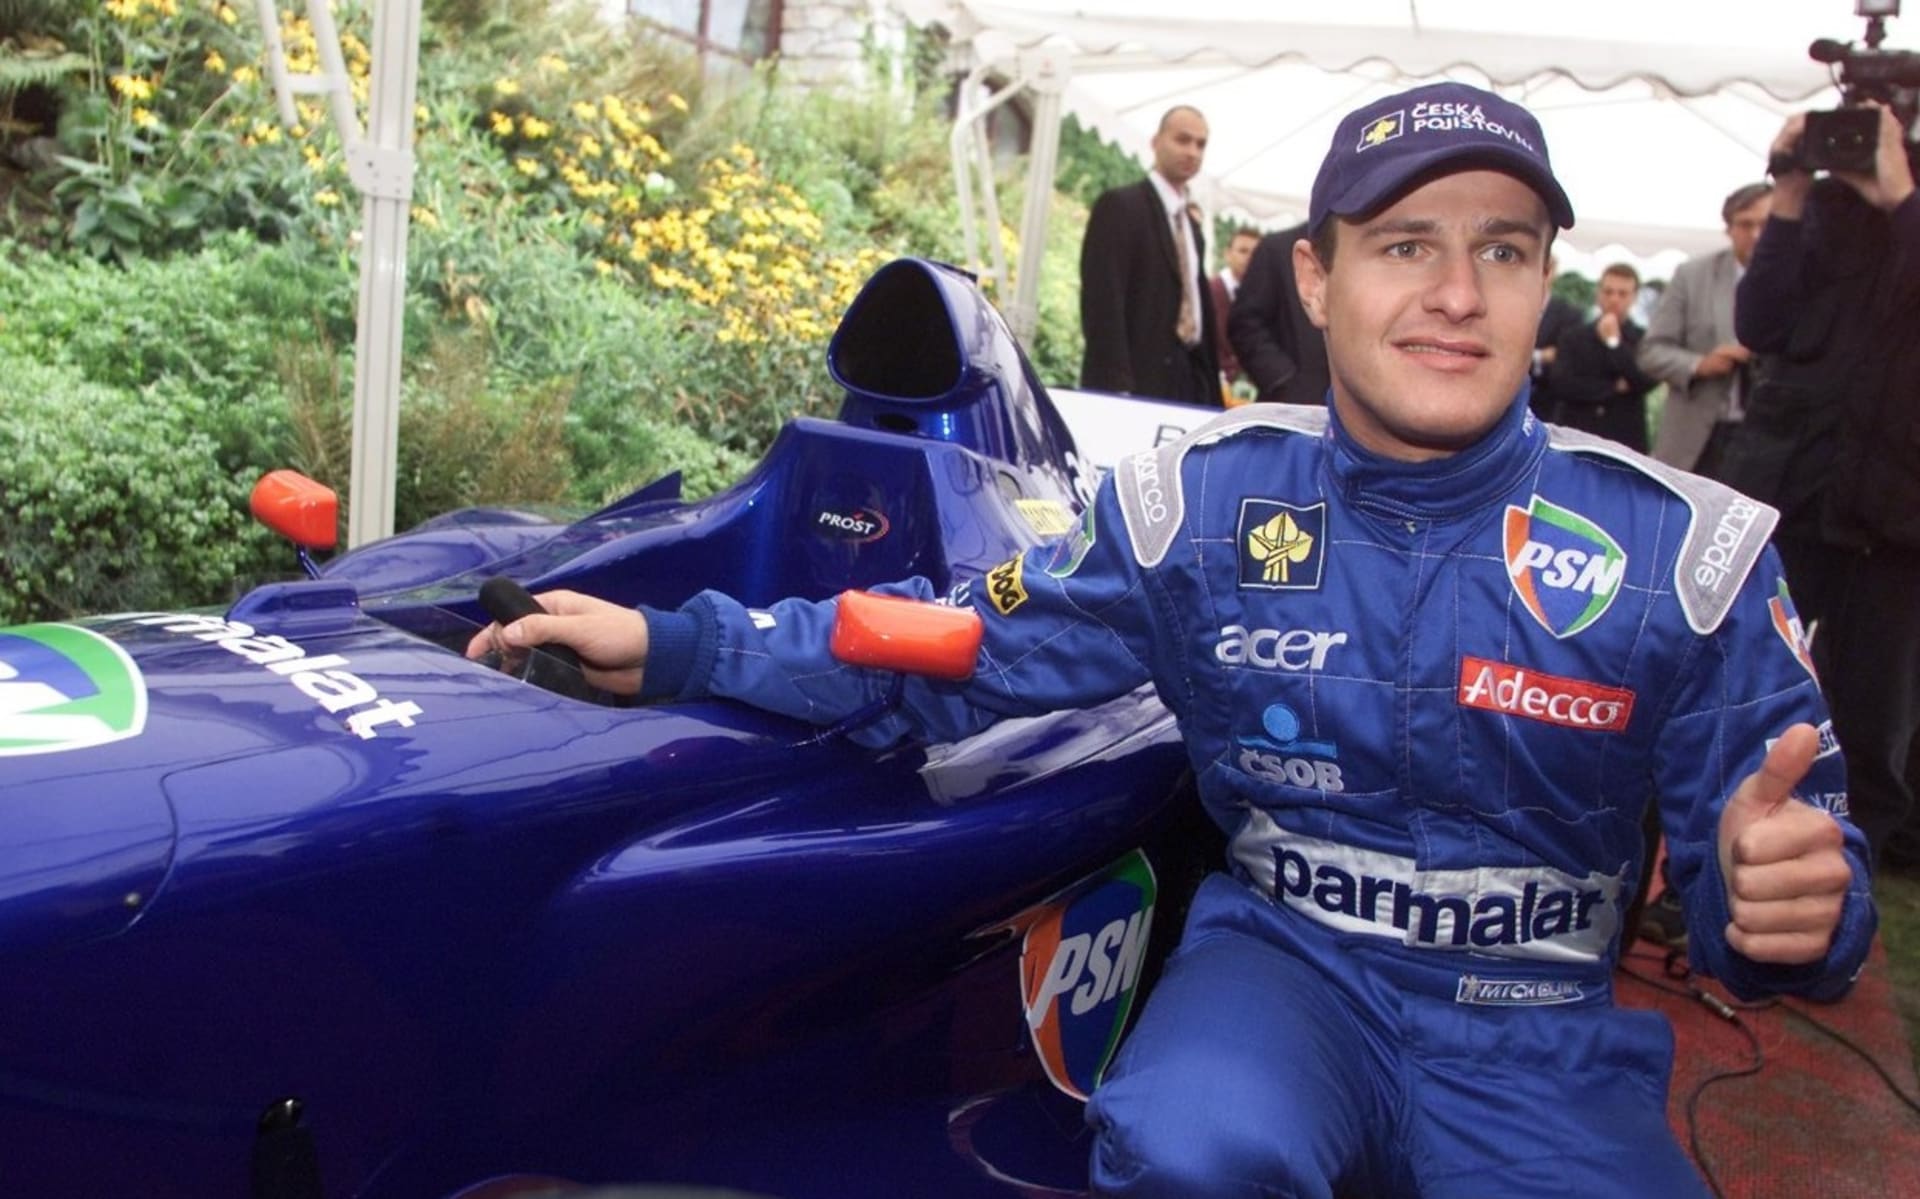 Tomáš Enge pózuje s formulí týmu Prost. Před 20 lety se stal prvním Čechem, který závodil ve formuli 1.